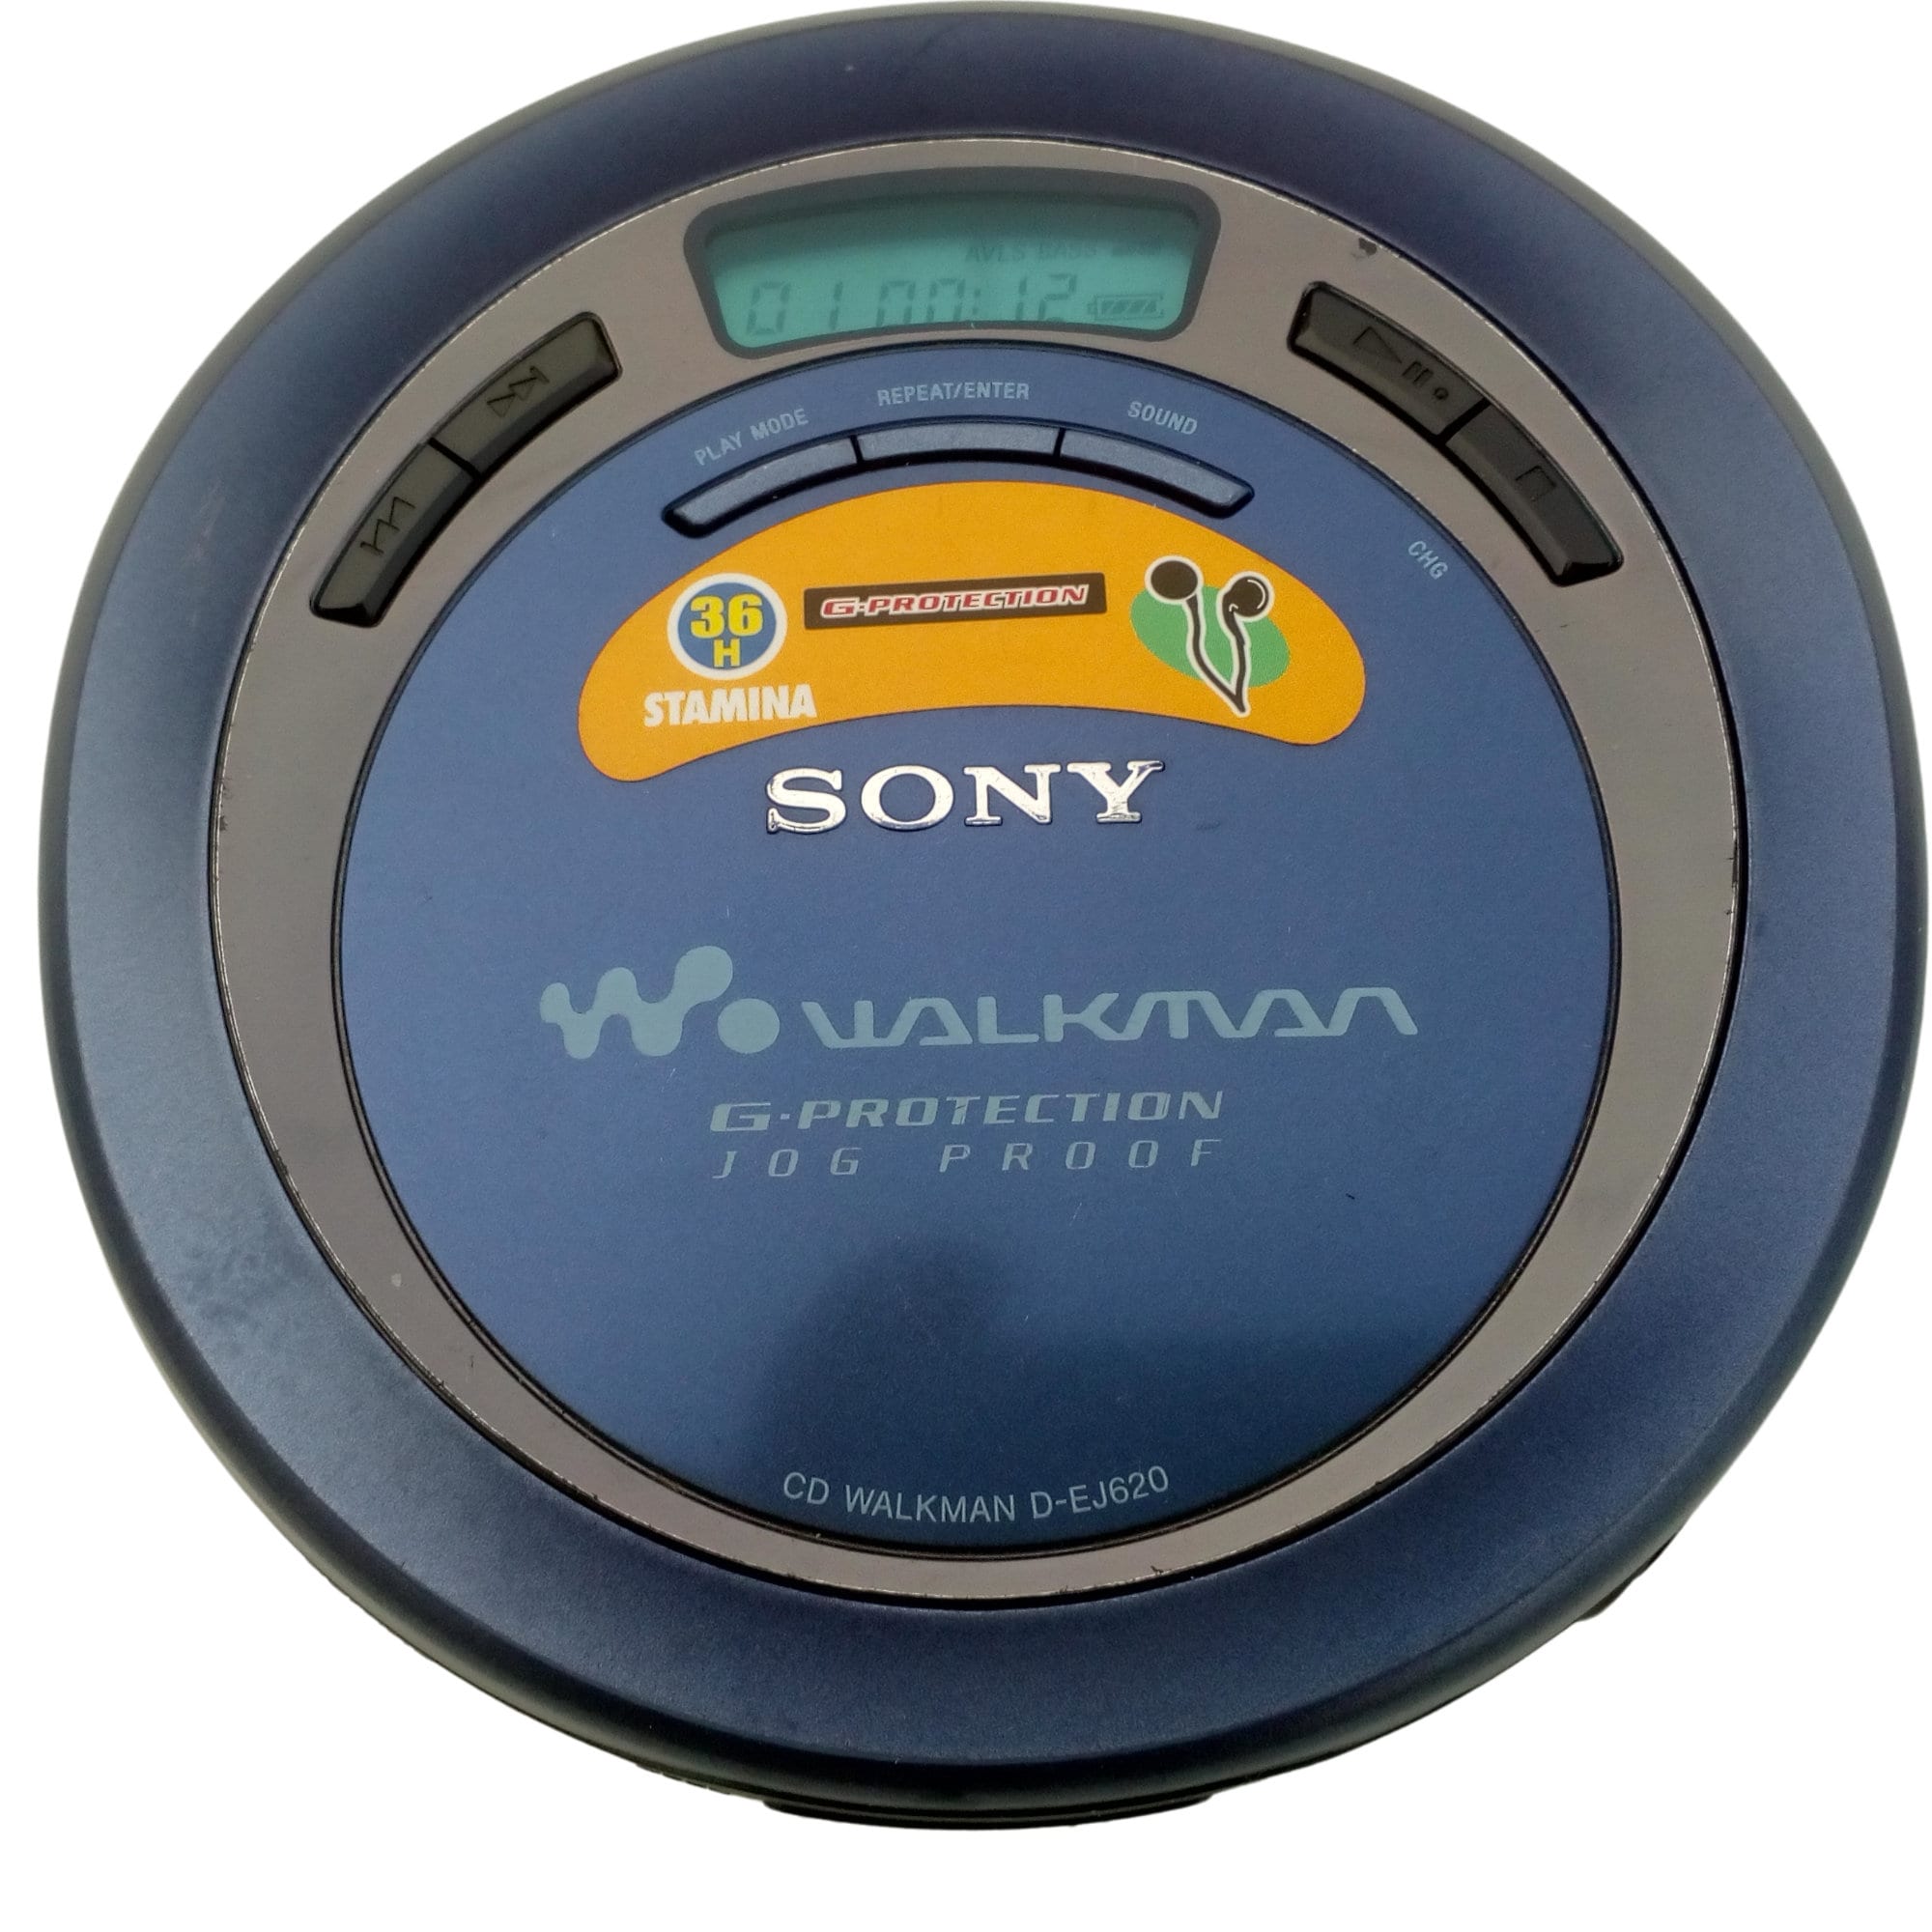 grundig k-cdp 66 - discman - cd walkman player - Compra venta en  todocoleccion